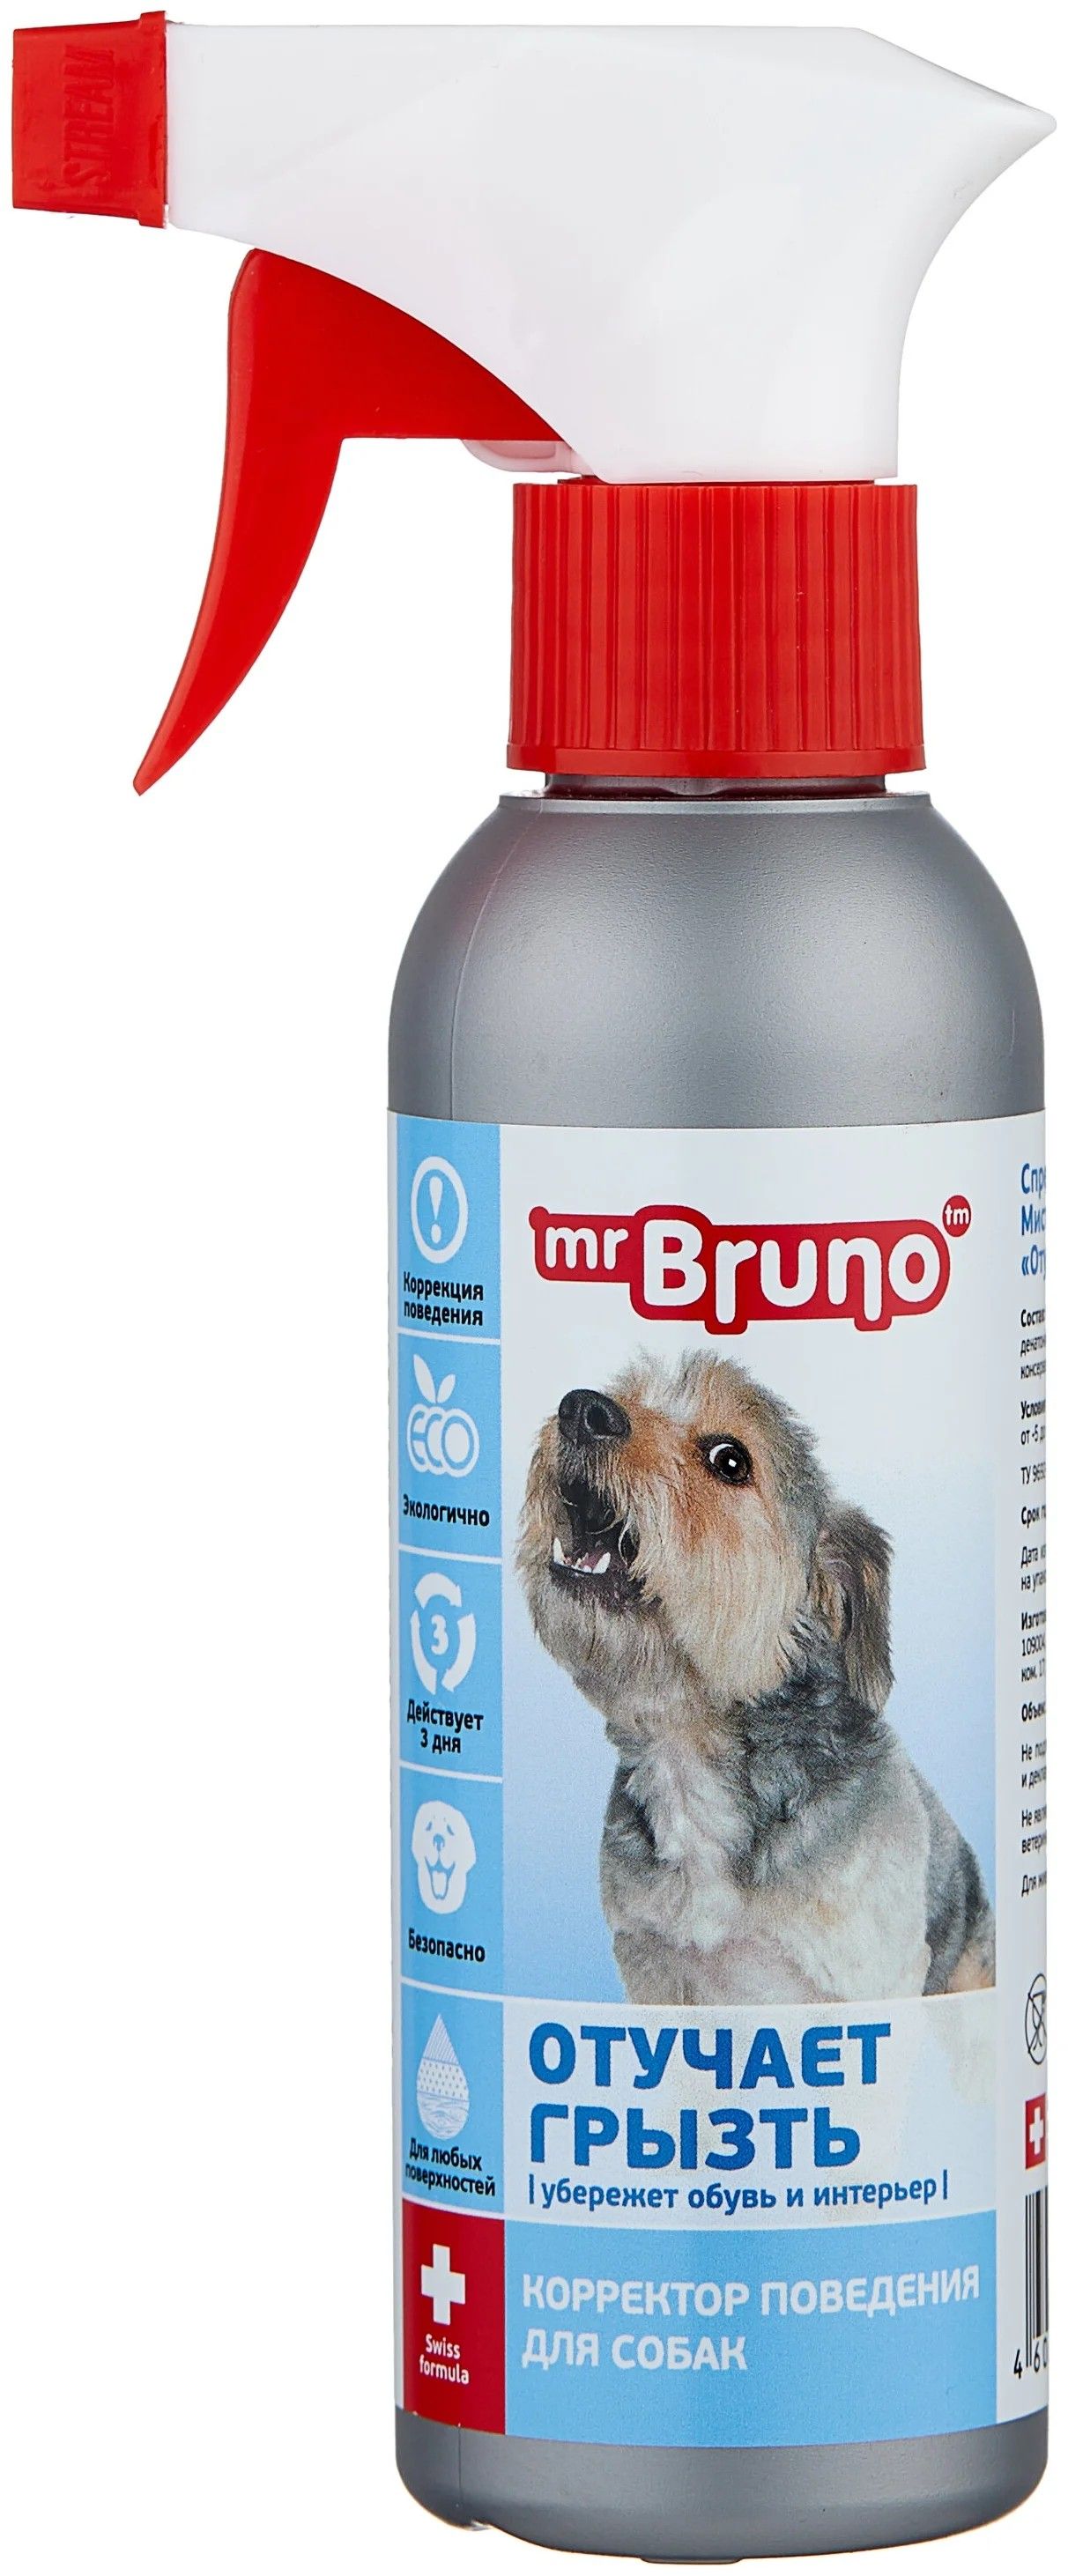 Спрей Mr.Bruno отучает грызть для собак 200 мл